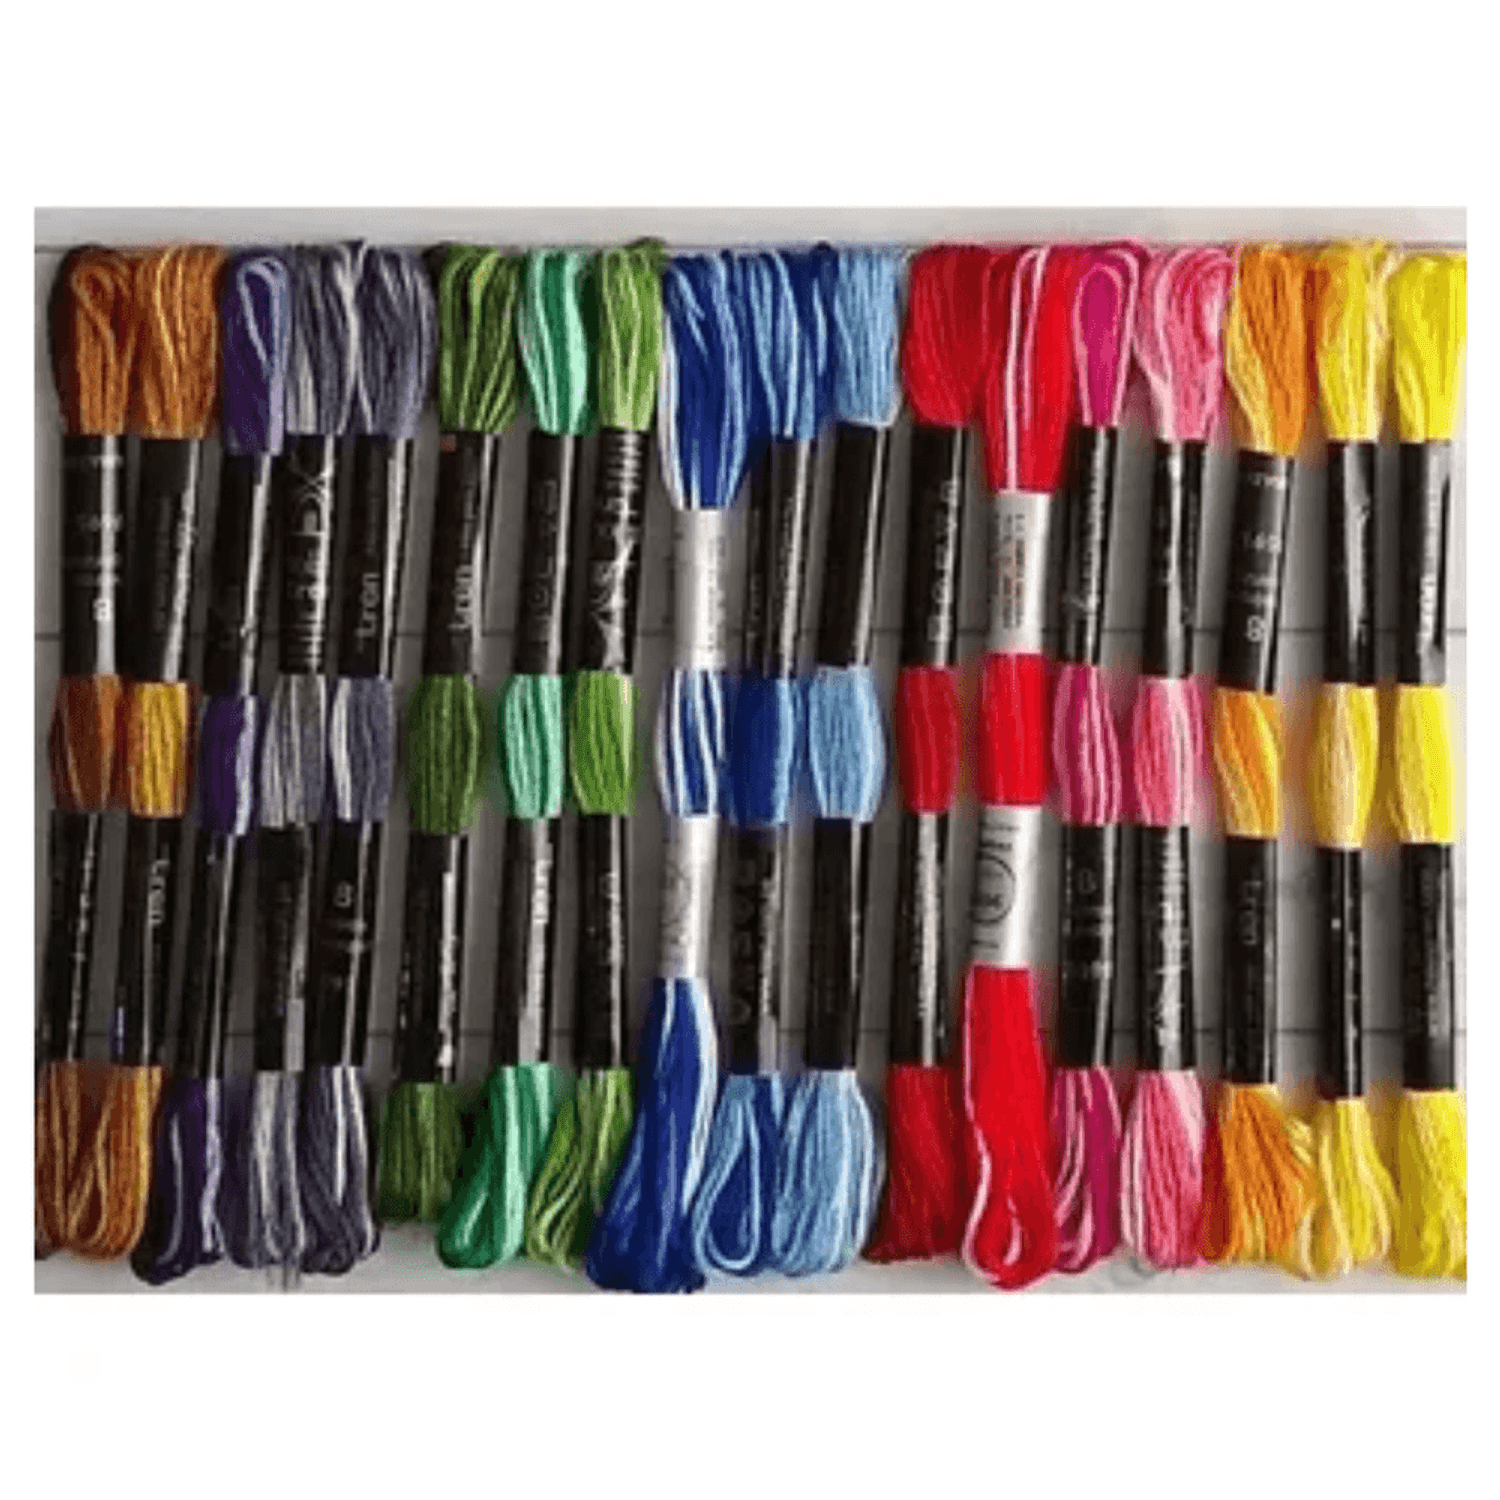 10 hilos de bordar de algodón - color tierra